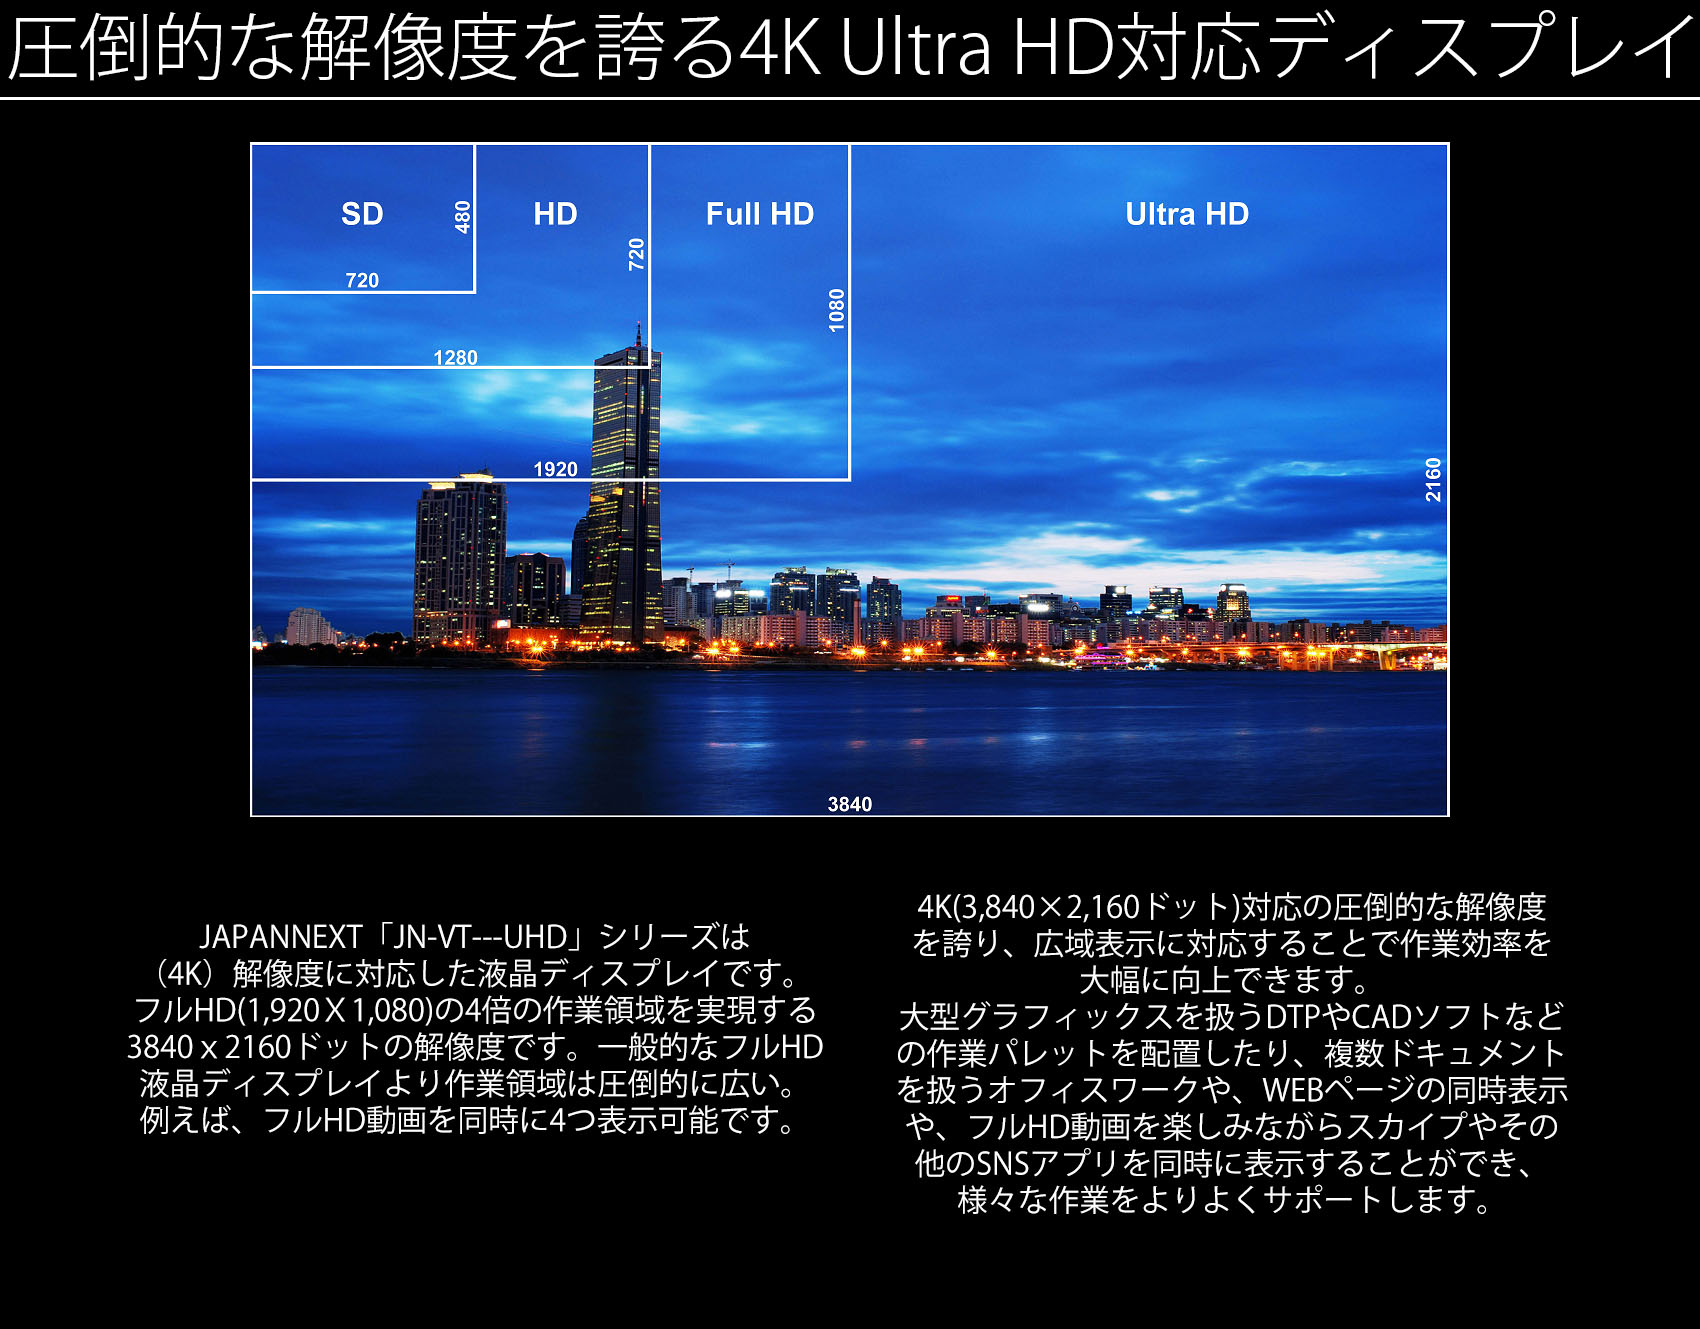 JAPANNEXT「JN-IPS4302TUHD」は43インチのUHD(4K）解像度に対応した液晶ディスプレイです。フルHD（1920×1080）の4倍の作業領域を実現する3840x2160ドットの解像度です。一般的なフルHD液晶ディスプレイより作業領域は圧倒的に広い。例えば、フルHD動画を同時に4つ表示可能です。4K対応の圧倒的な解像度を誇り、広域表示に対応することで作業効率を大幅に向上できます。大型グラフィックスを扱うDTPやCADソフトなどの作業パレットを配置したり、複数ドキュメントを扱うオフィスワークや、WEBページの同時表示や、フルHD動画を楽しみながらスカイプやその他のSNSアプリを同時に表示することができ、様々な作業をよりよくサポートします。